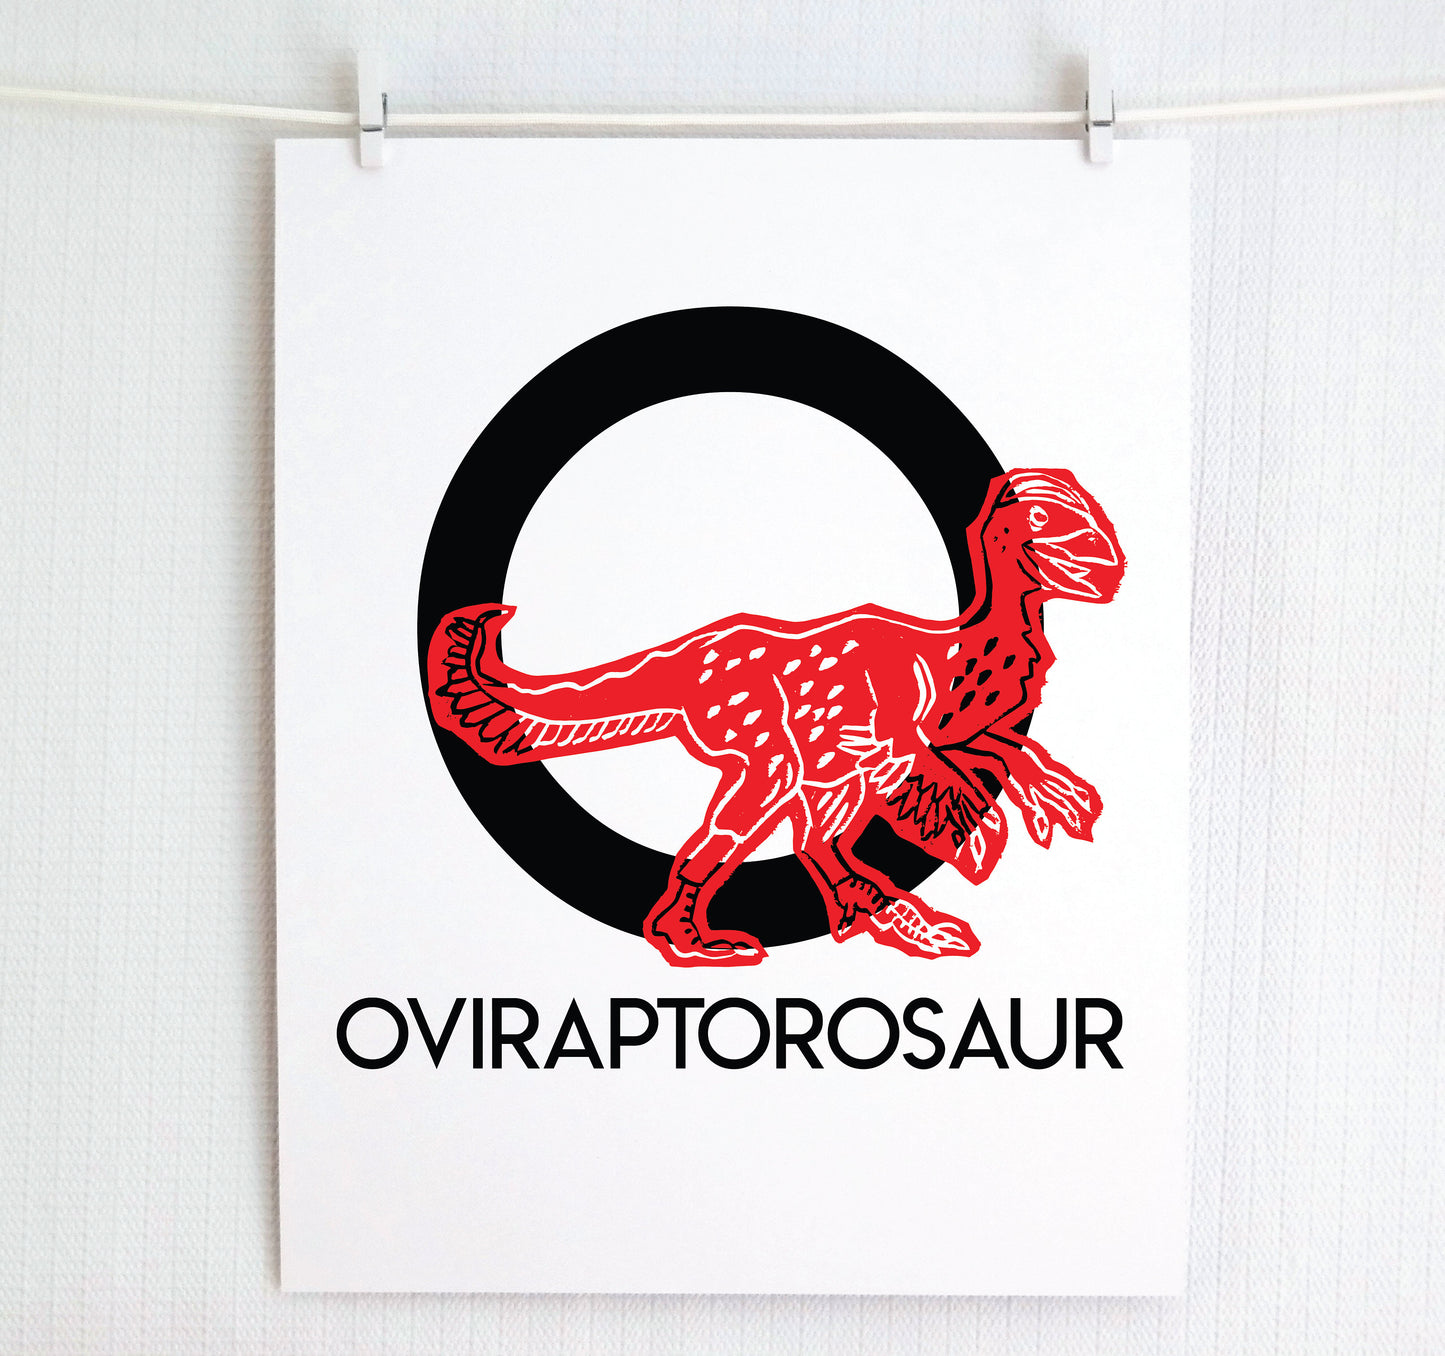 O is for Oviraptorosaur